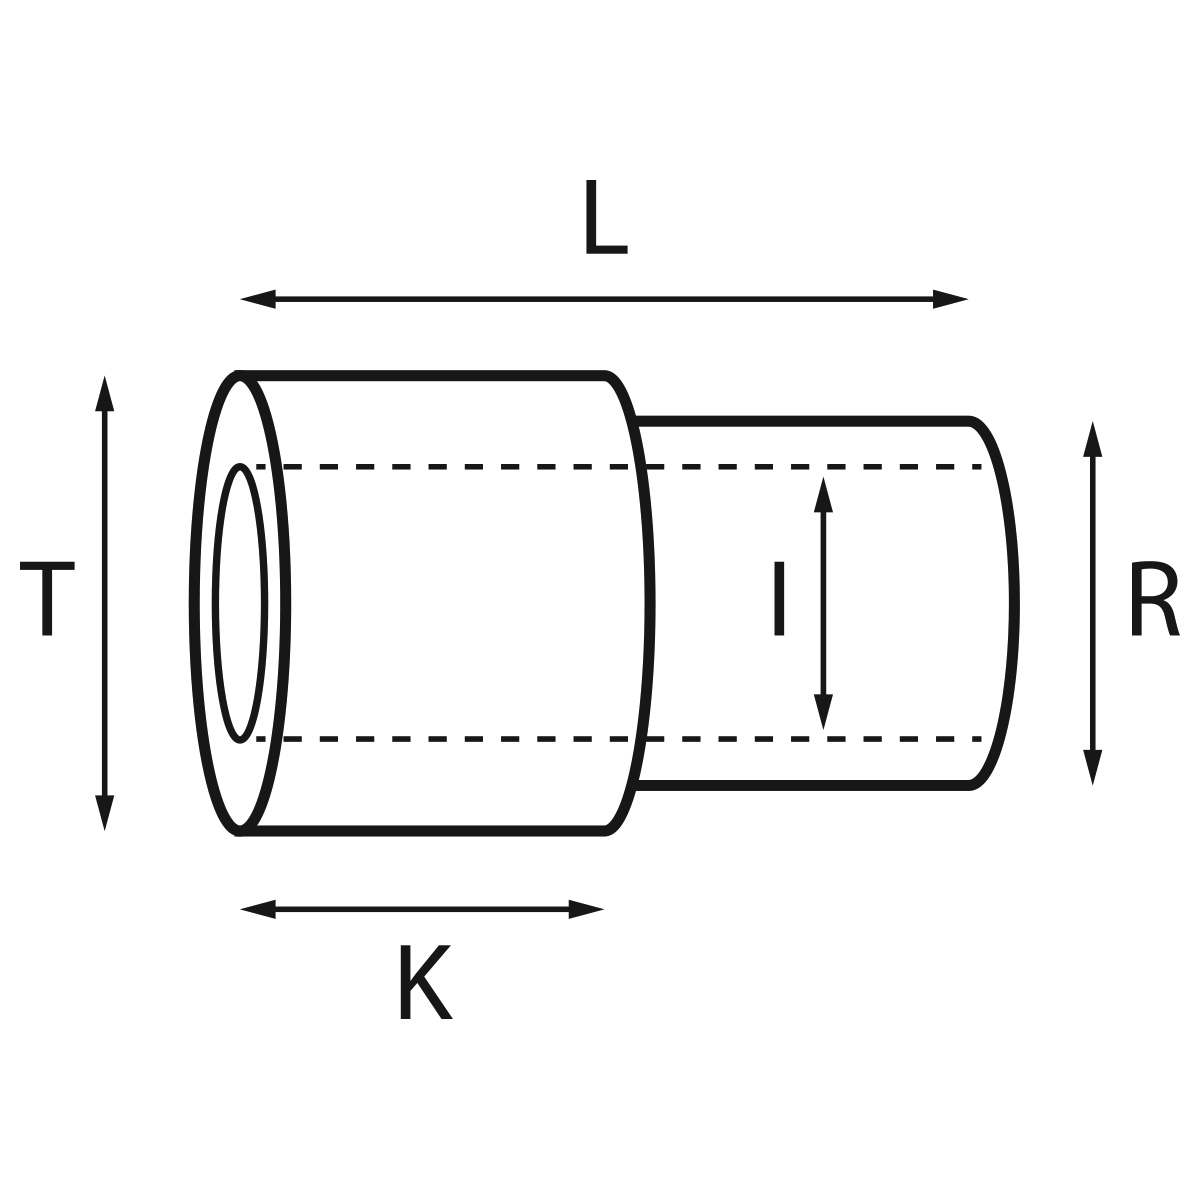 Gehäusetube Typ AS 13826, Tubus Ø 2 mm, Gesamtlänge 3,3 mm, für wasserdichte Kronen